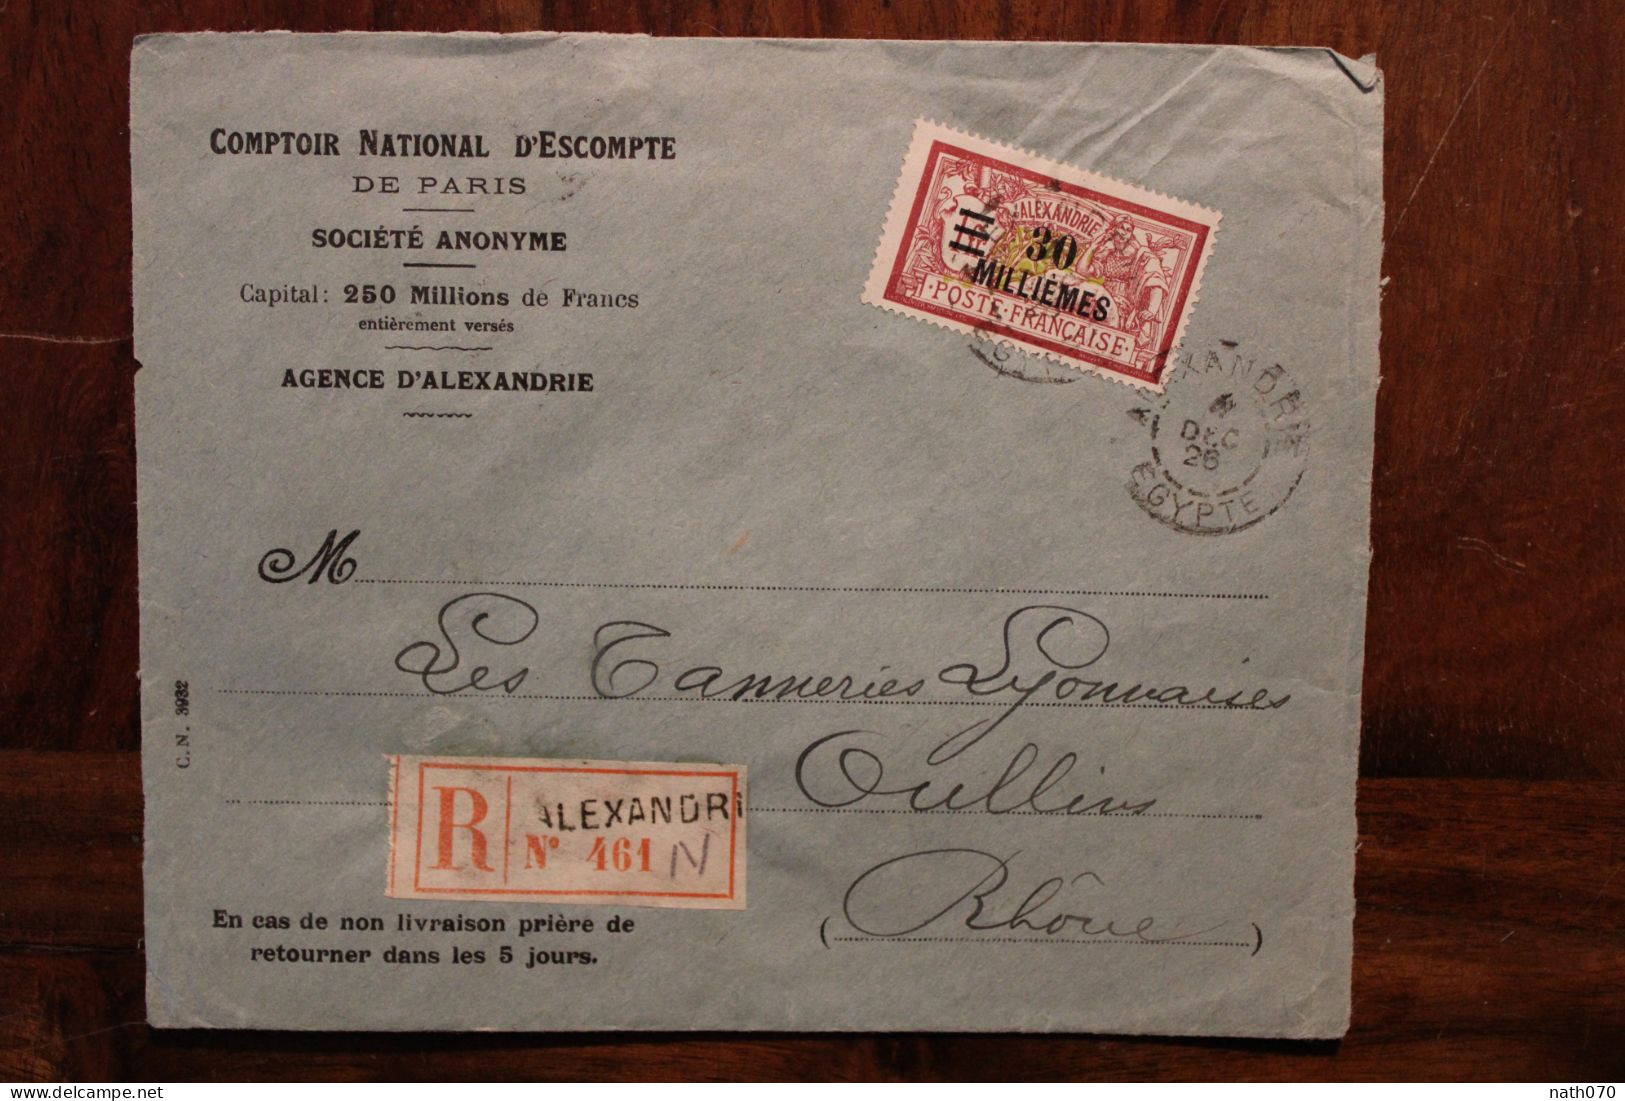 Alexandrie 1926 France Egypte Cover Egypt Ägypten Front D'enveloppe Recommandé Registered Reco R - Lettres & Documents